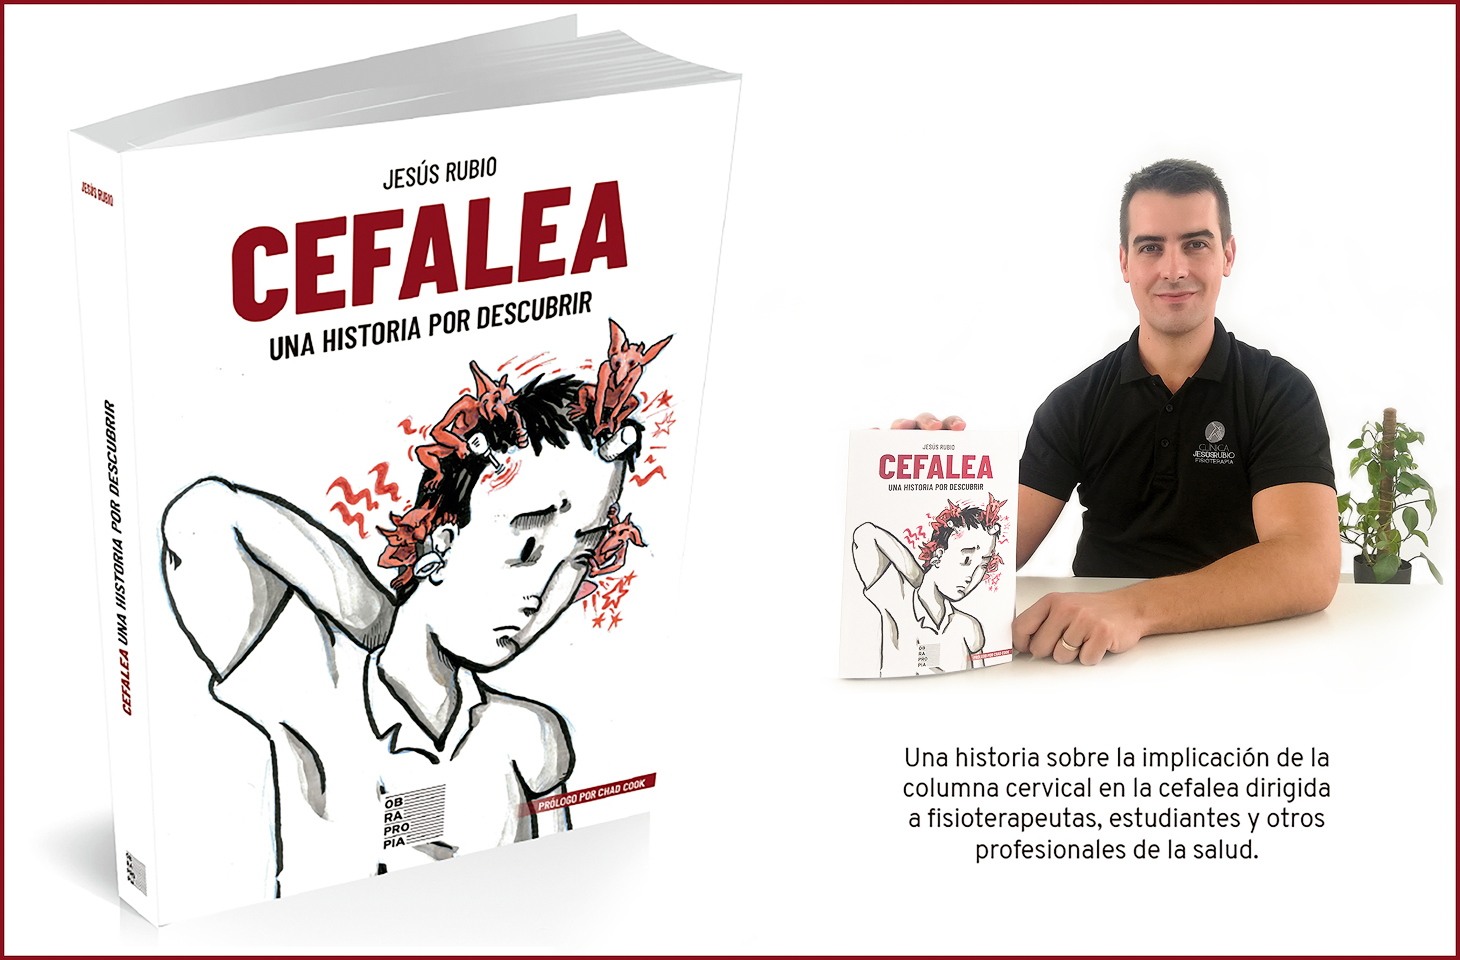 El fisioterapeuta Jesús Rubio publica su libro “CEFALEA: una historia por descubrir” 